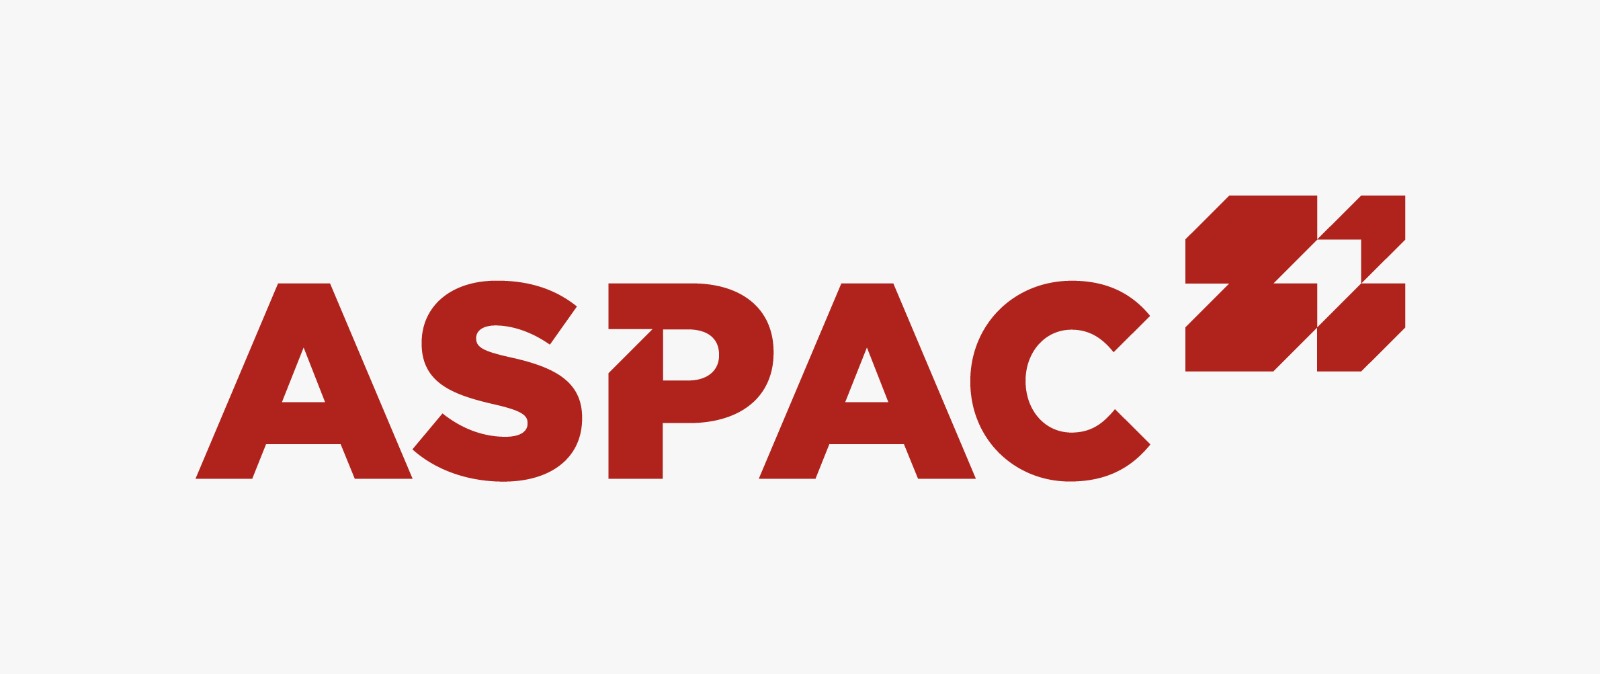 Aspac Aircargo Services Pte Ltd company logo